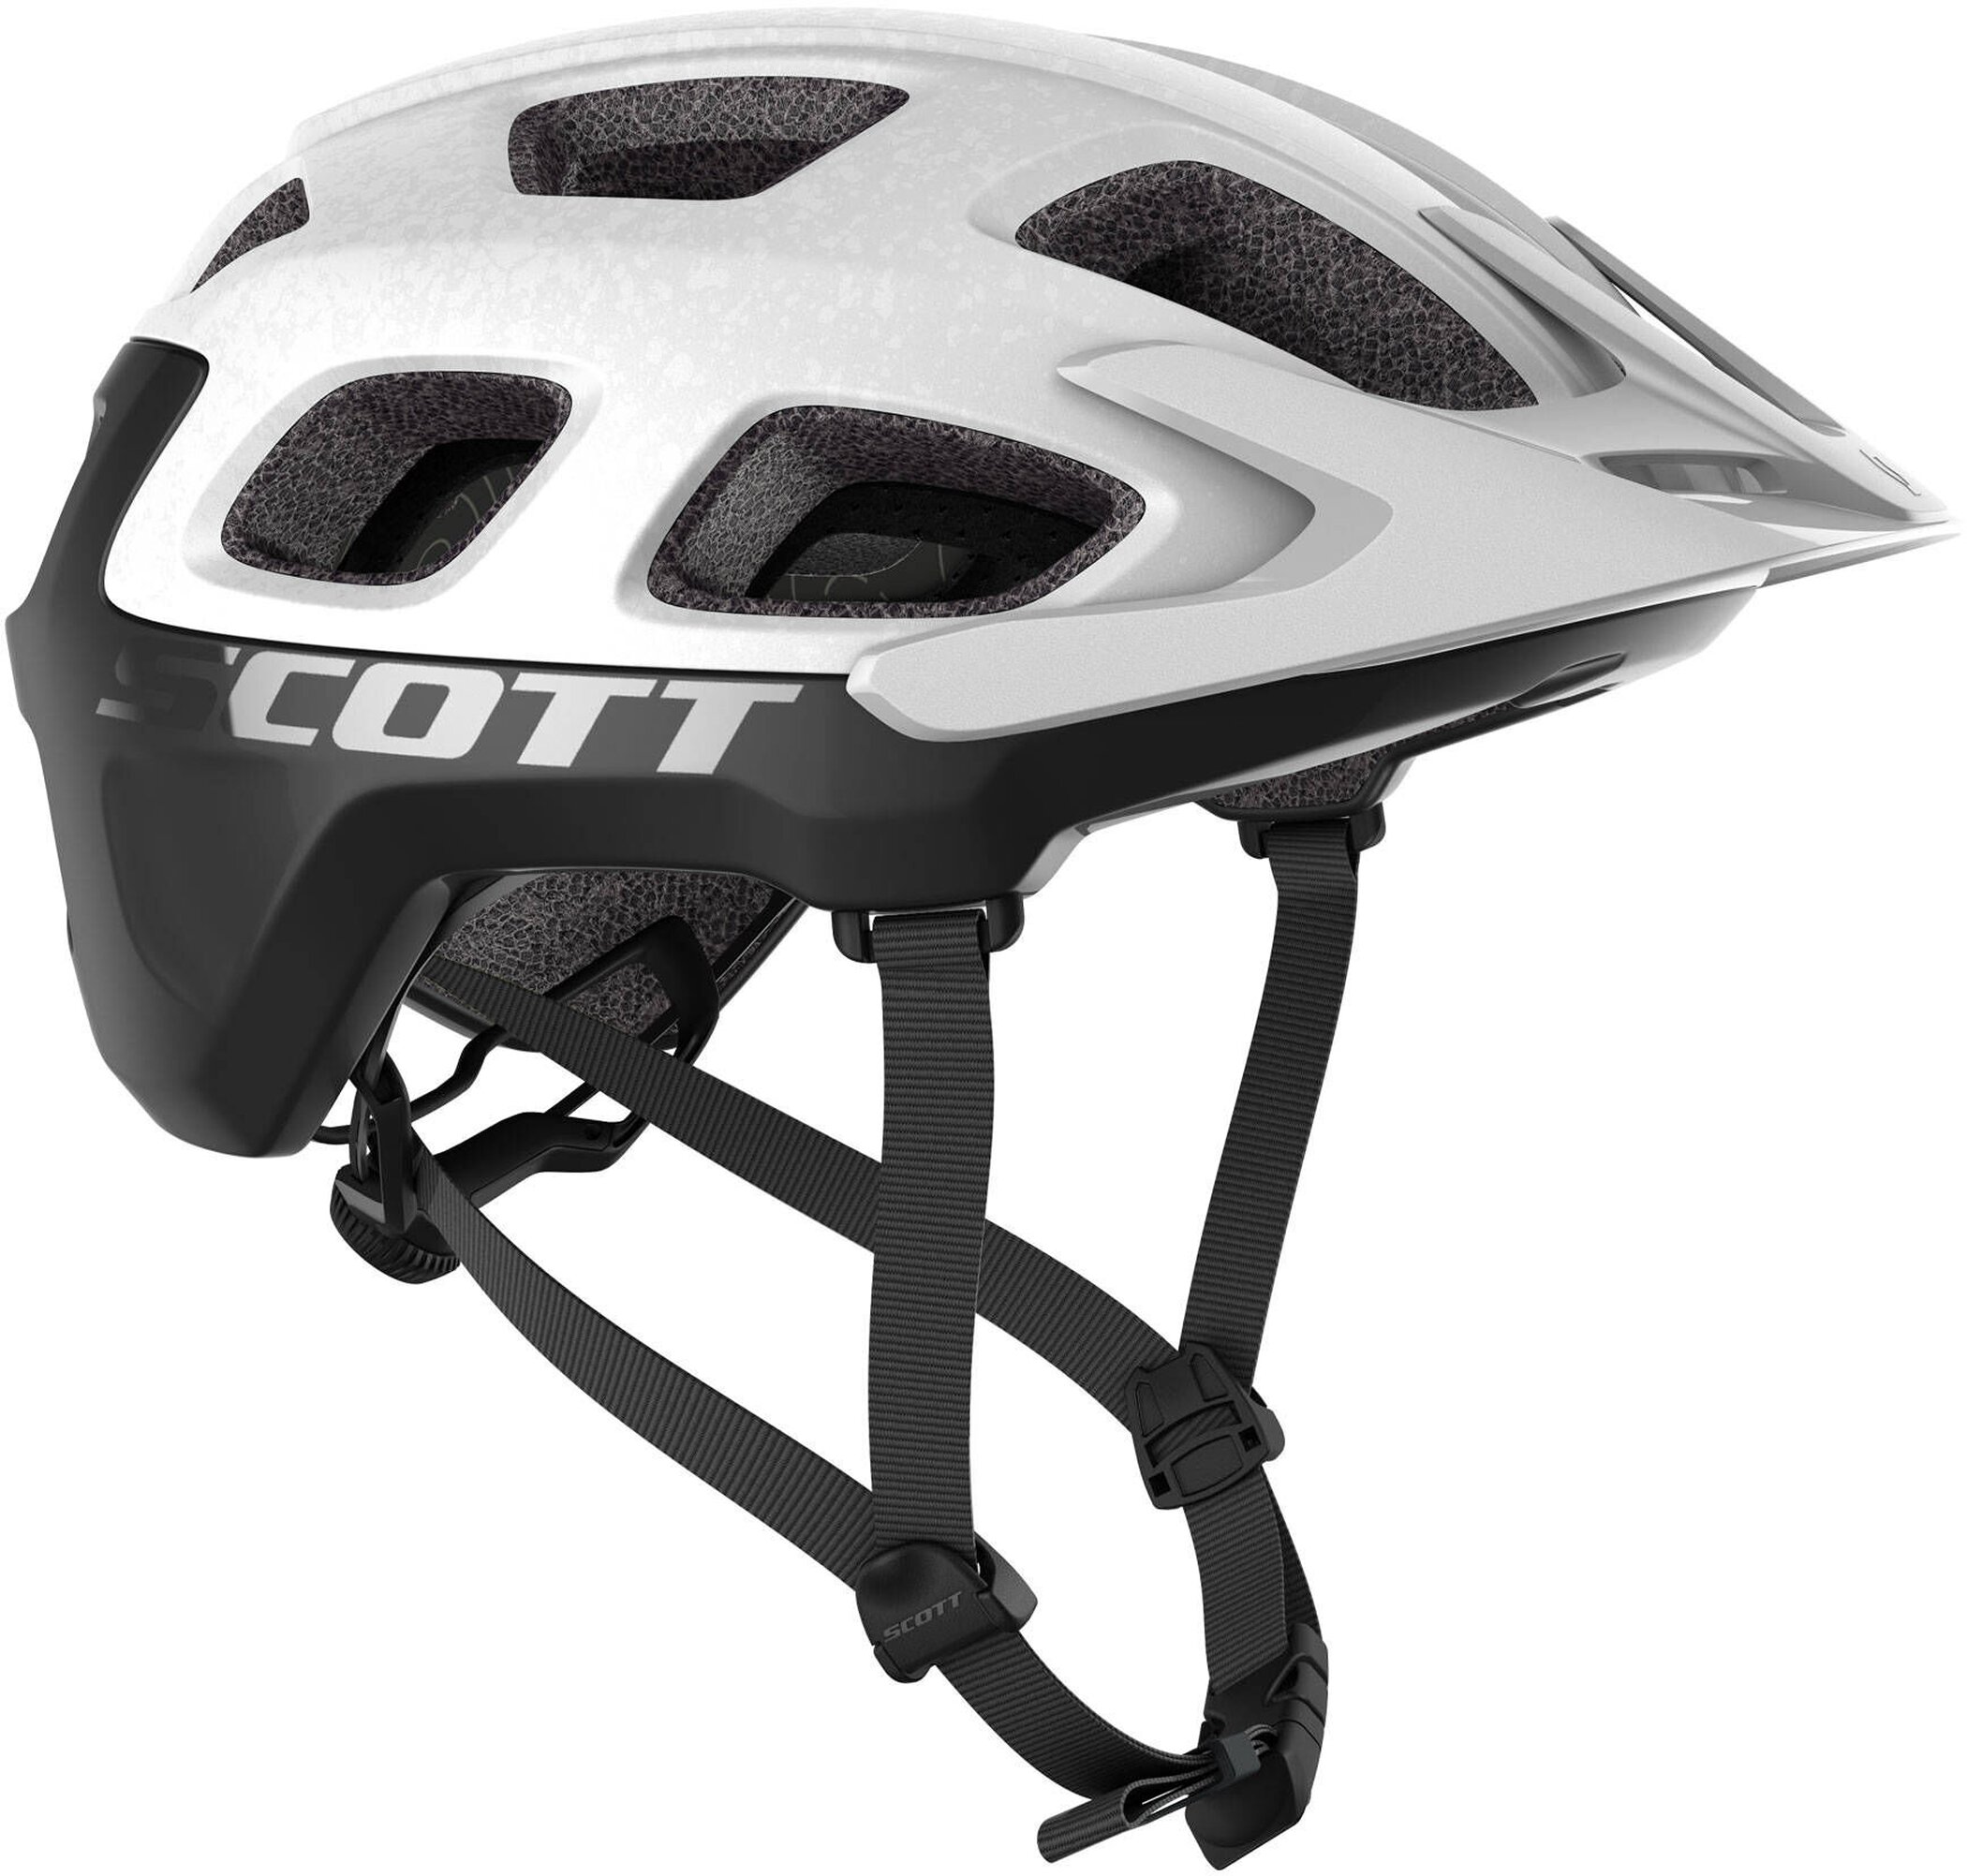 SCO Helmet Vivo Plus (CE)